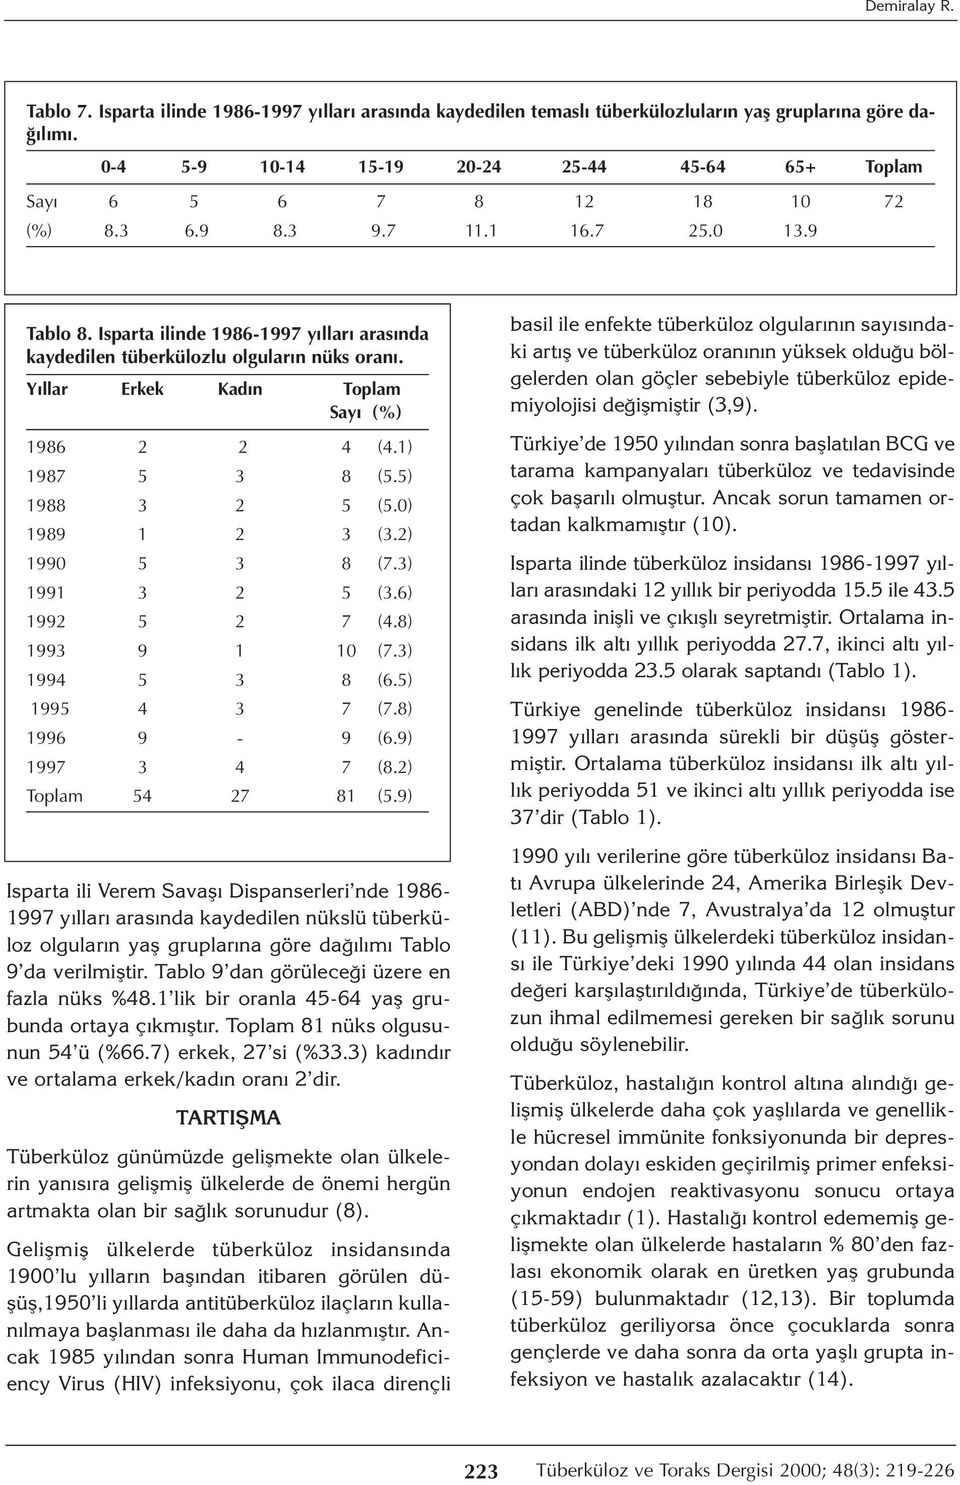 Isparta ilinde 1986-1997 yılları arasında kaydedilen tüberkülozlu olguların nüks oranı. Yıllar Erkek Kadın Toplam Sayı (%) 1986 2 2 4 (4.1) 1987 5 3 8 (5.5) 1988 3 2 5 (5.0) 1989 1 2 3 (3.